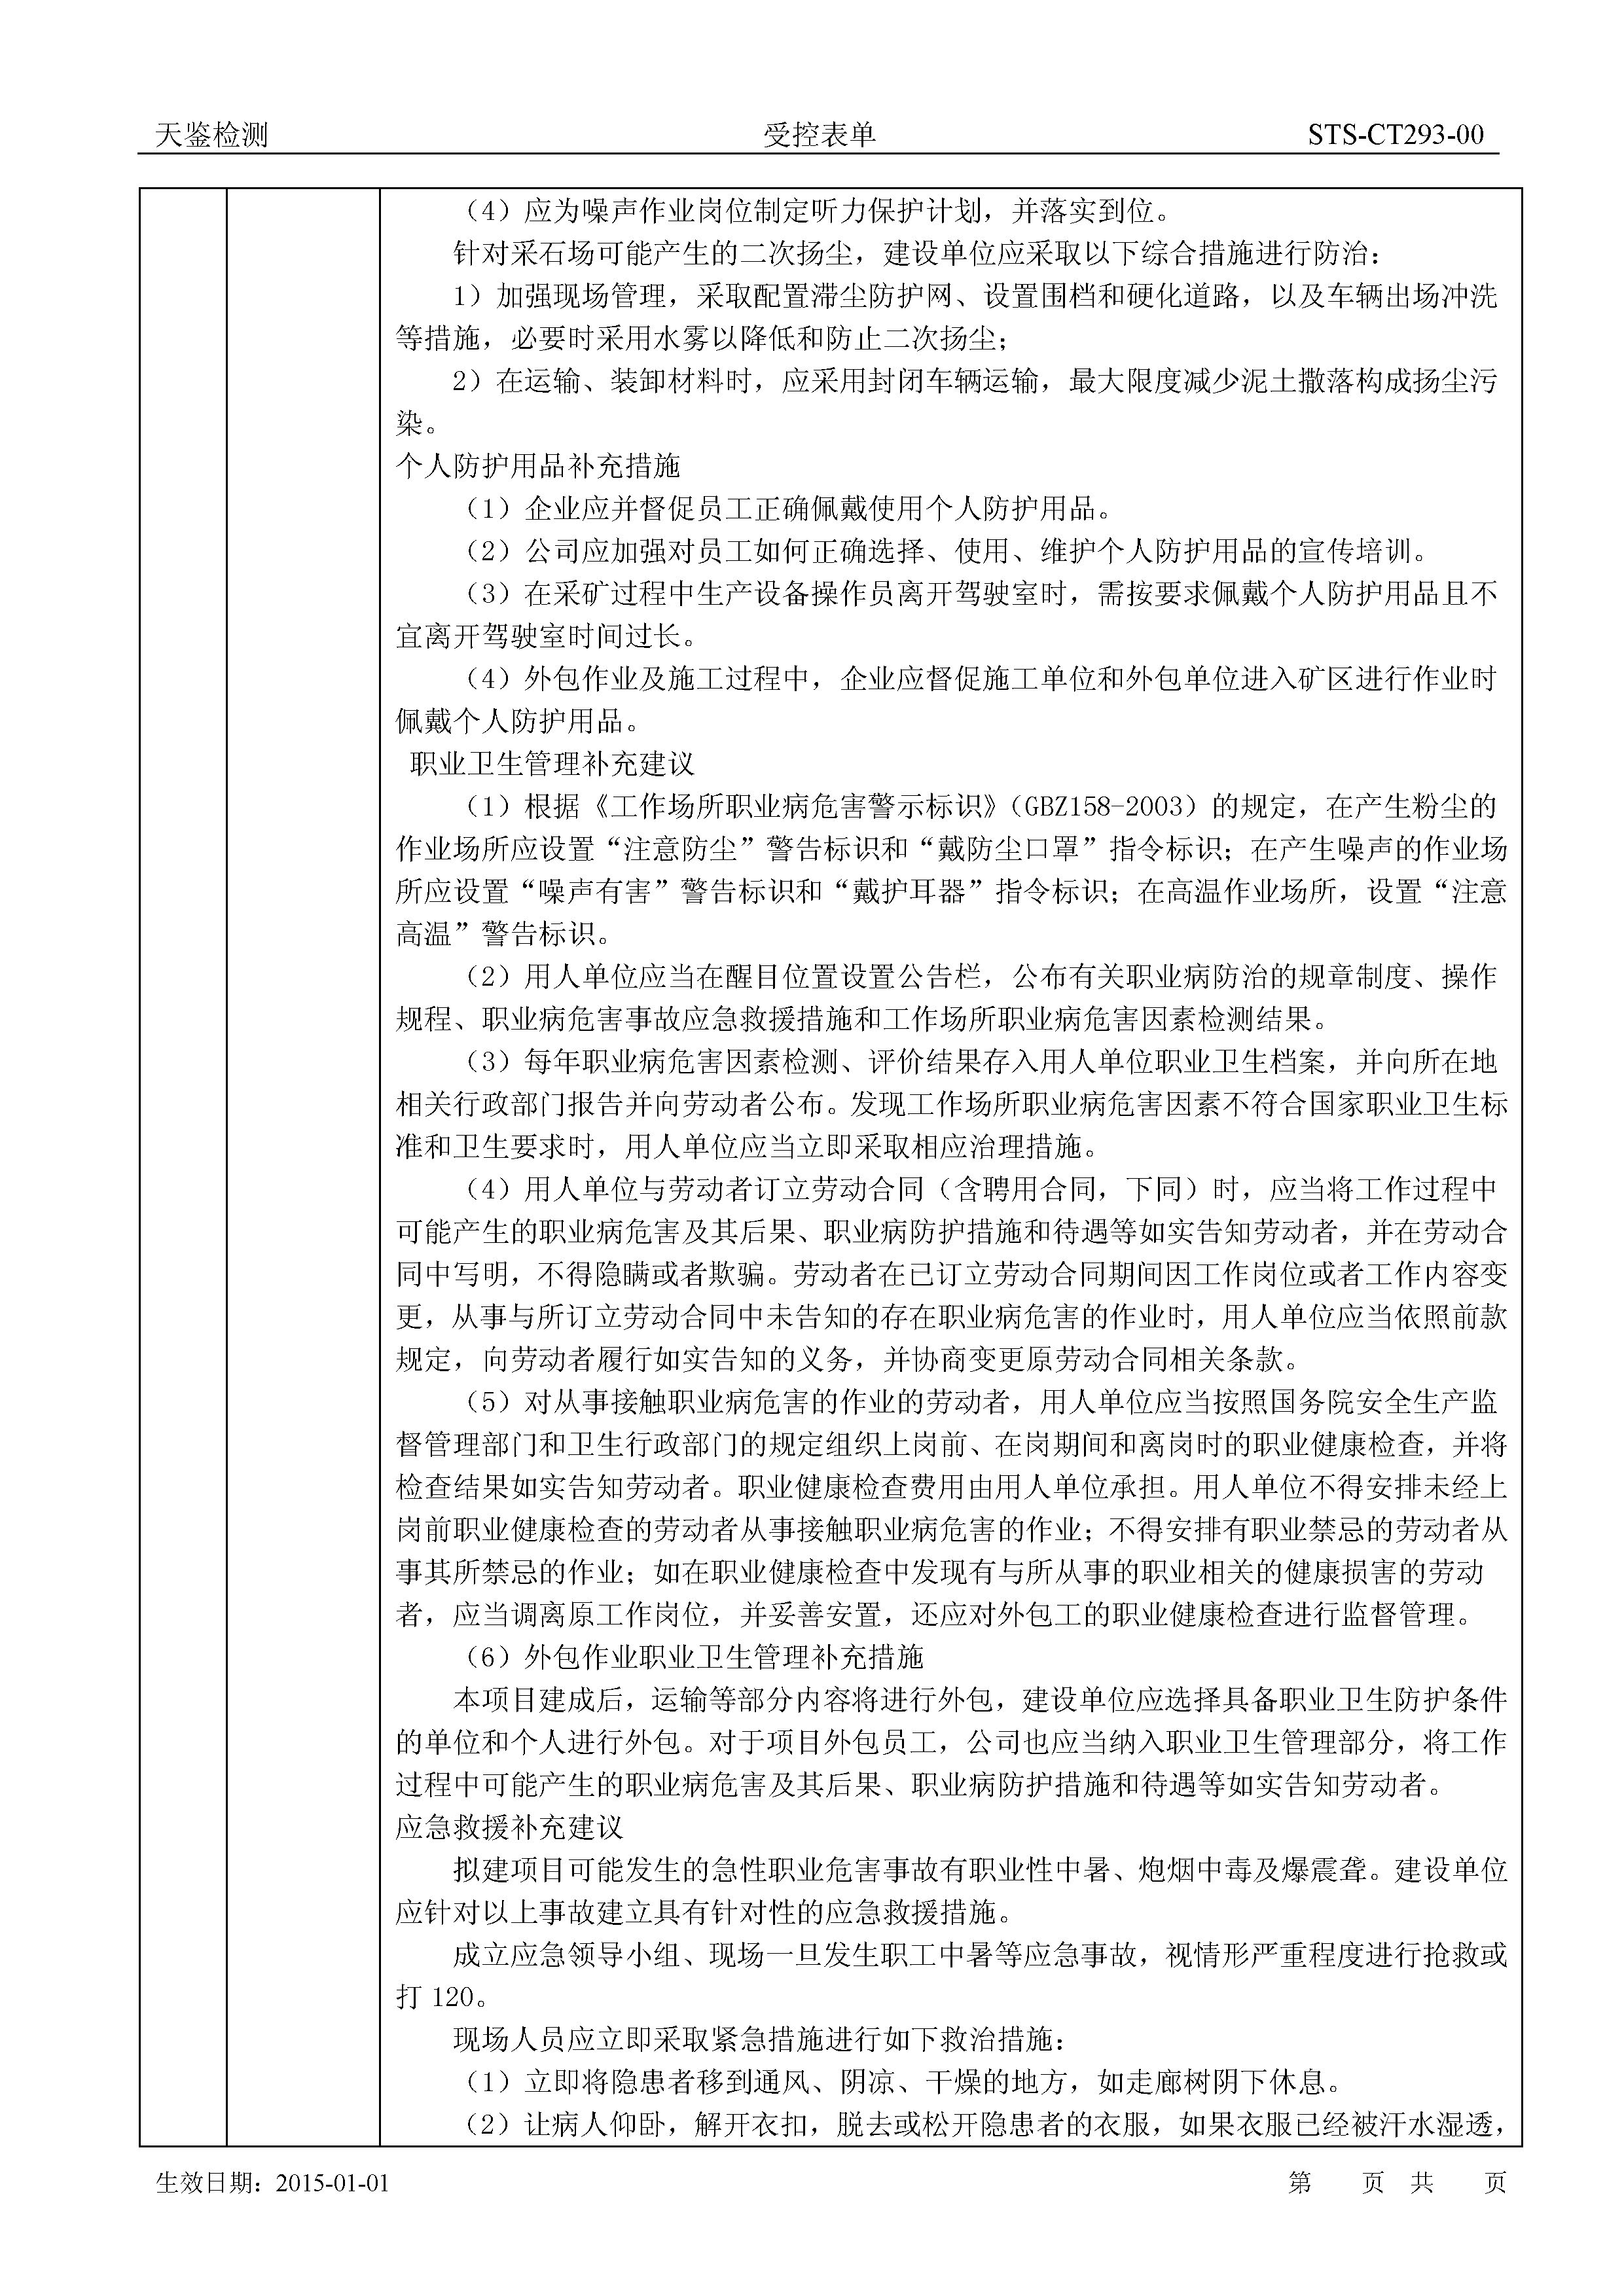 广东塔牌集团股份有限公司惠州龙门分公司建设项目职业病危害评价报告网上公开信息表